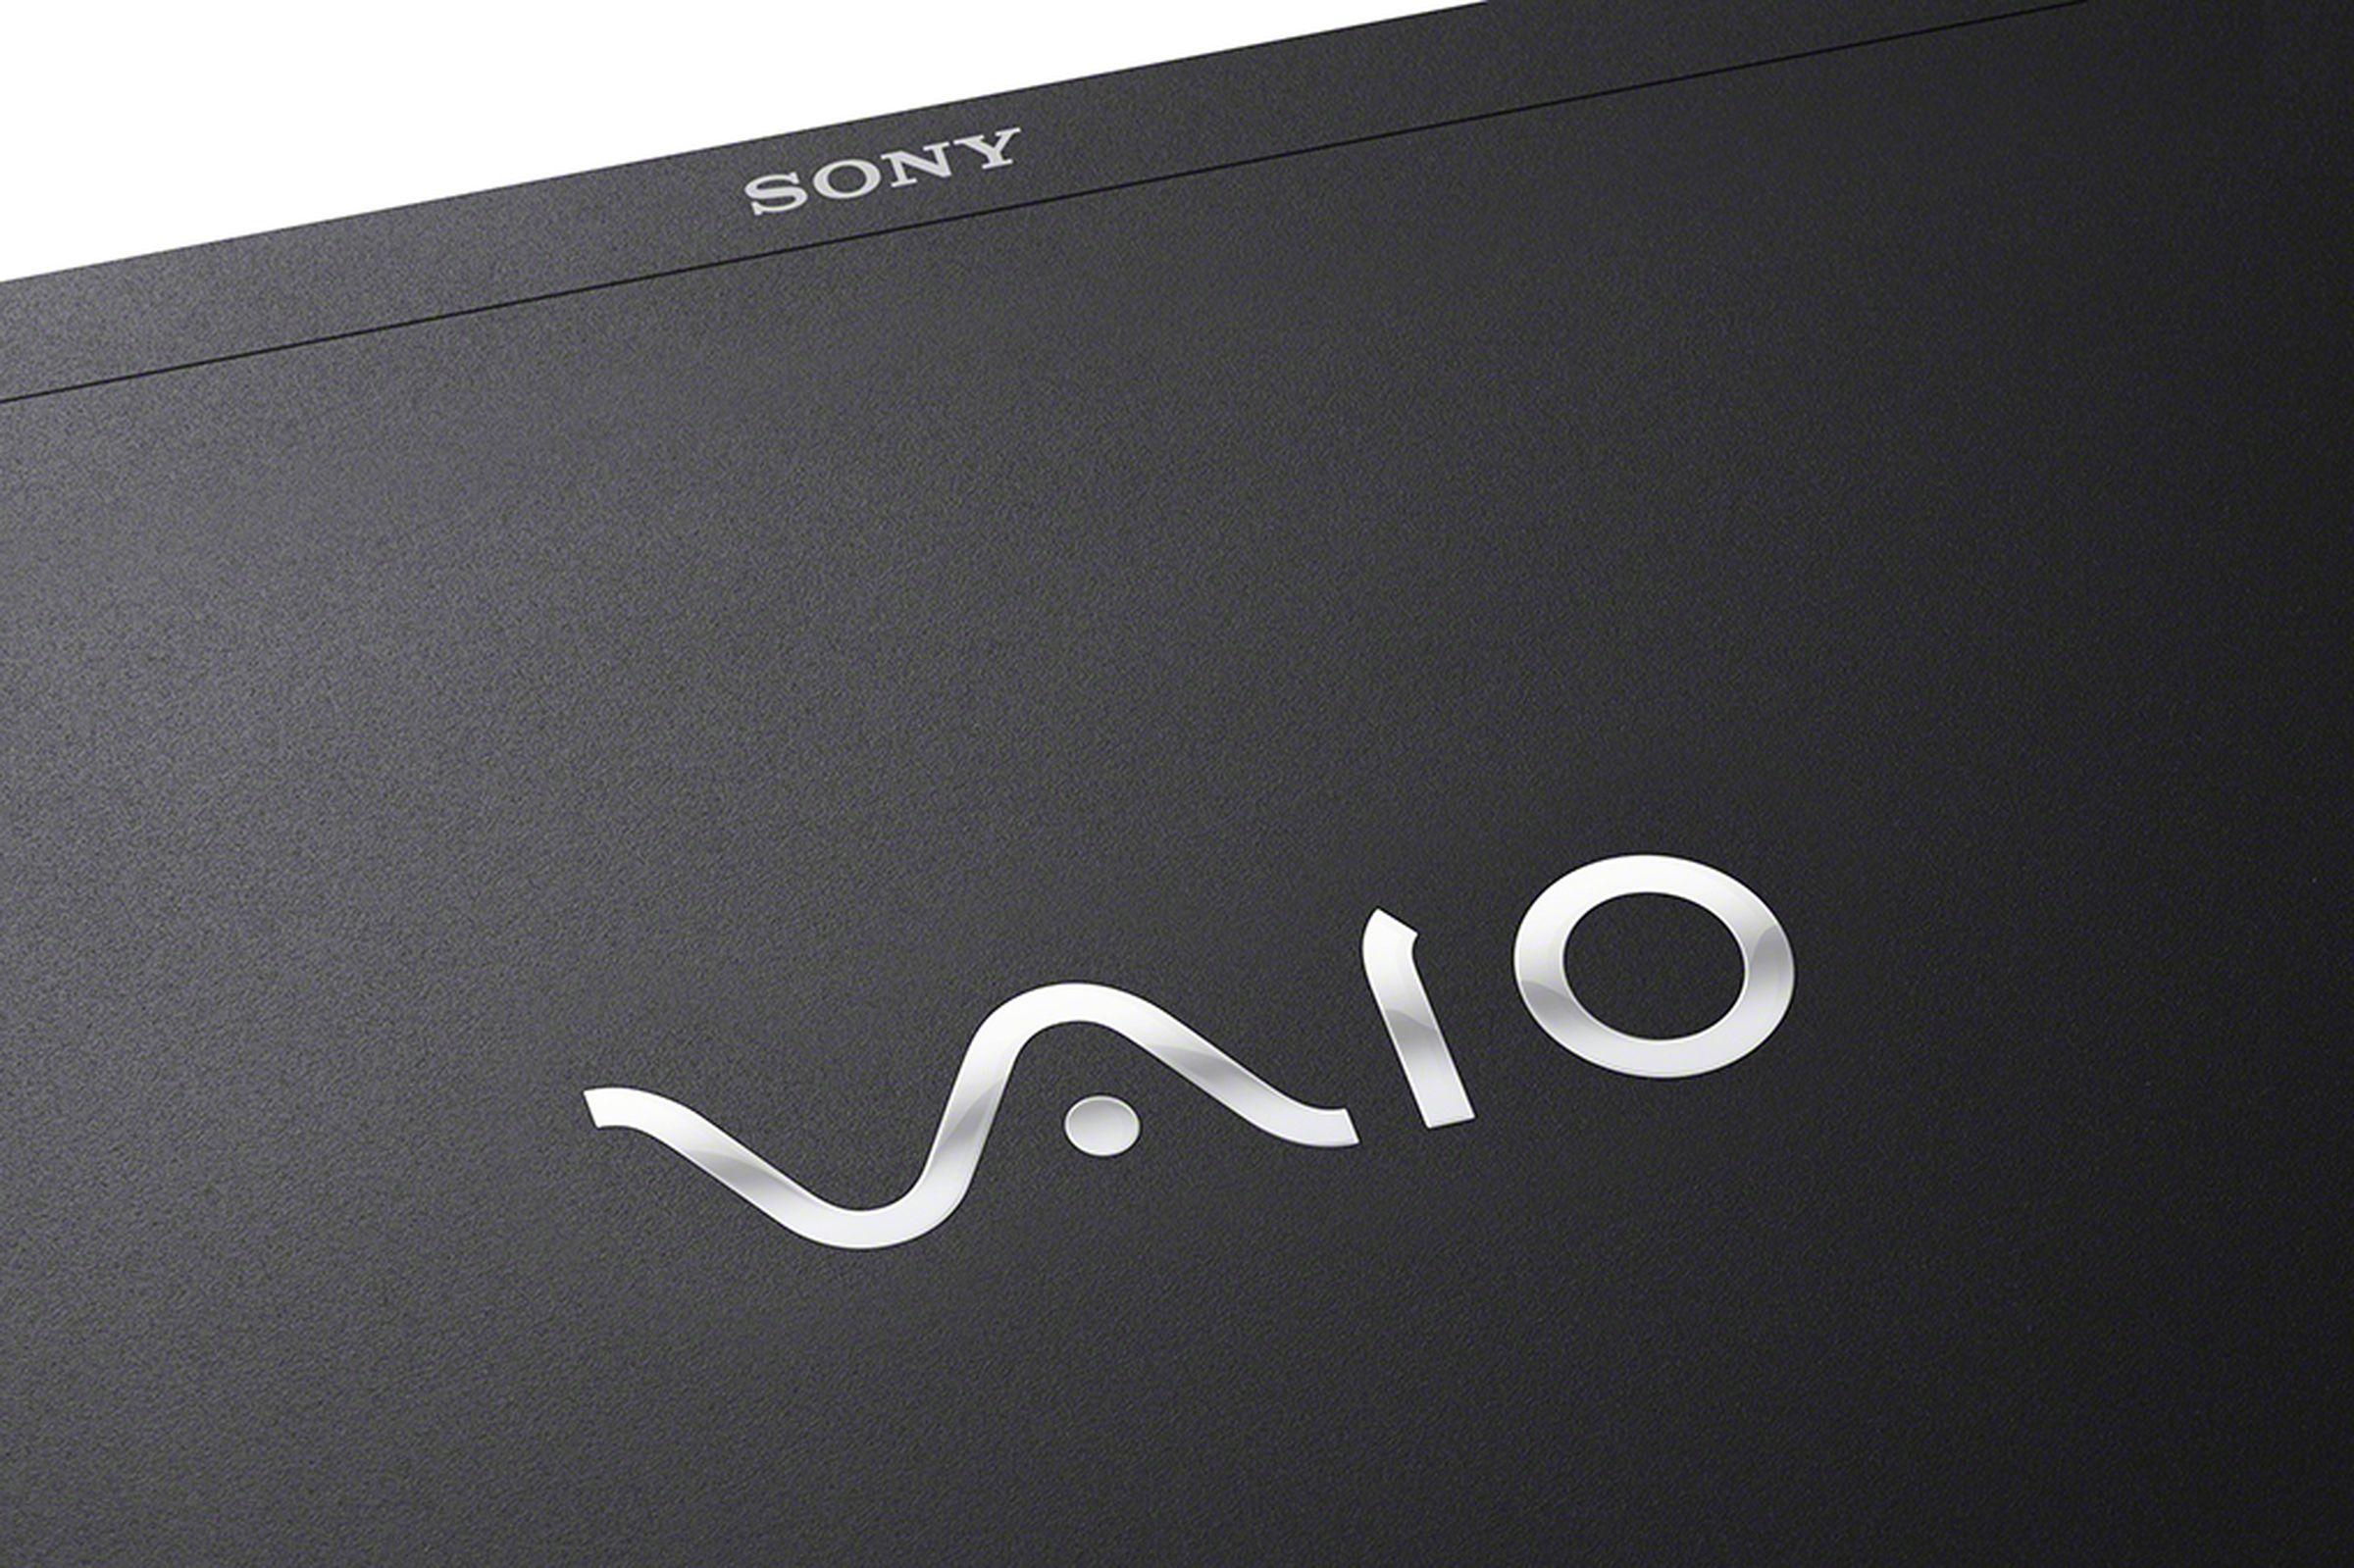 Sony VAIO S (mid 2012) press pictures